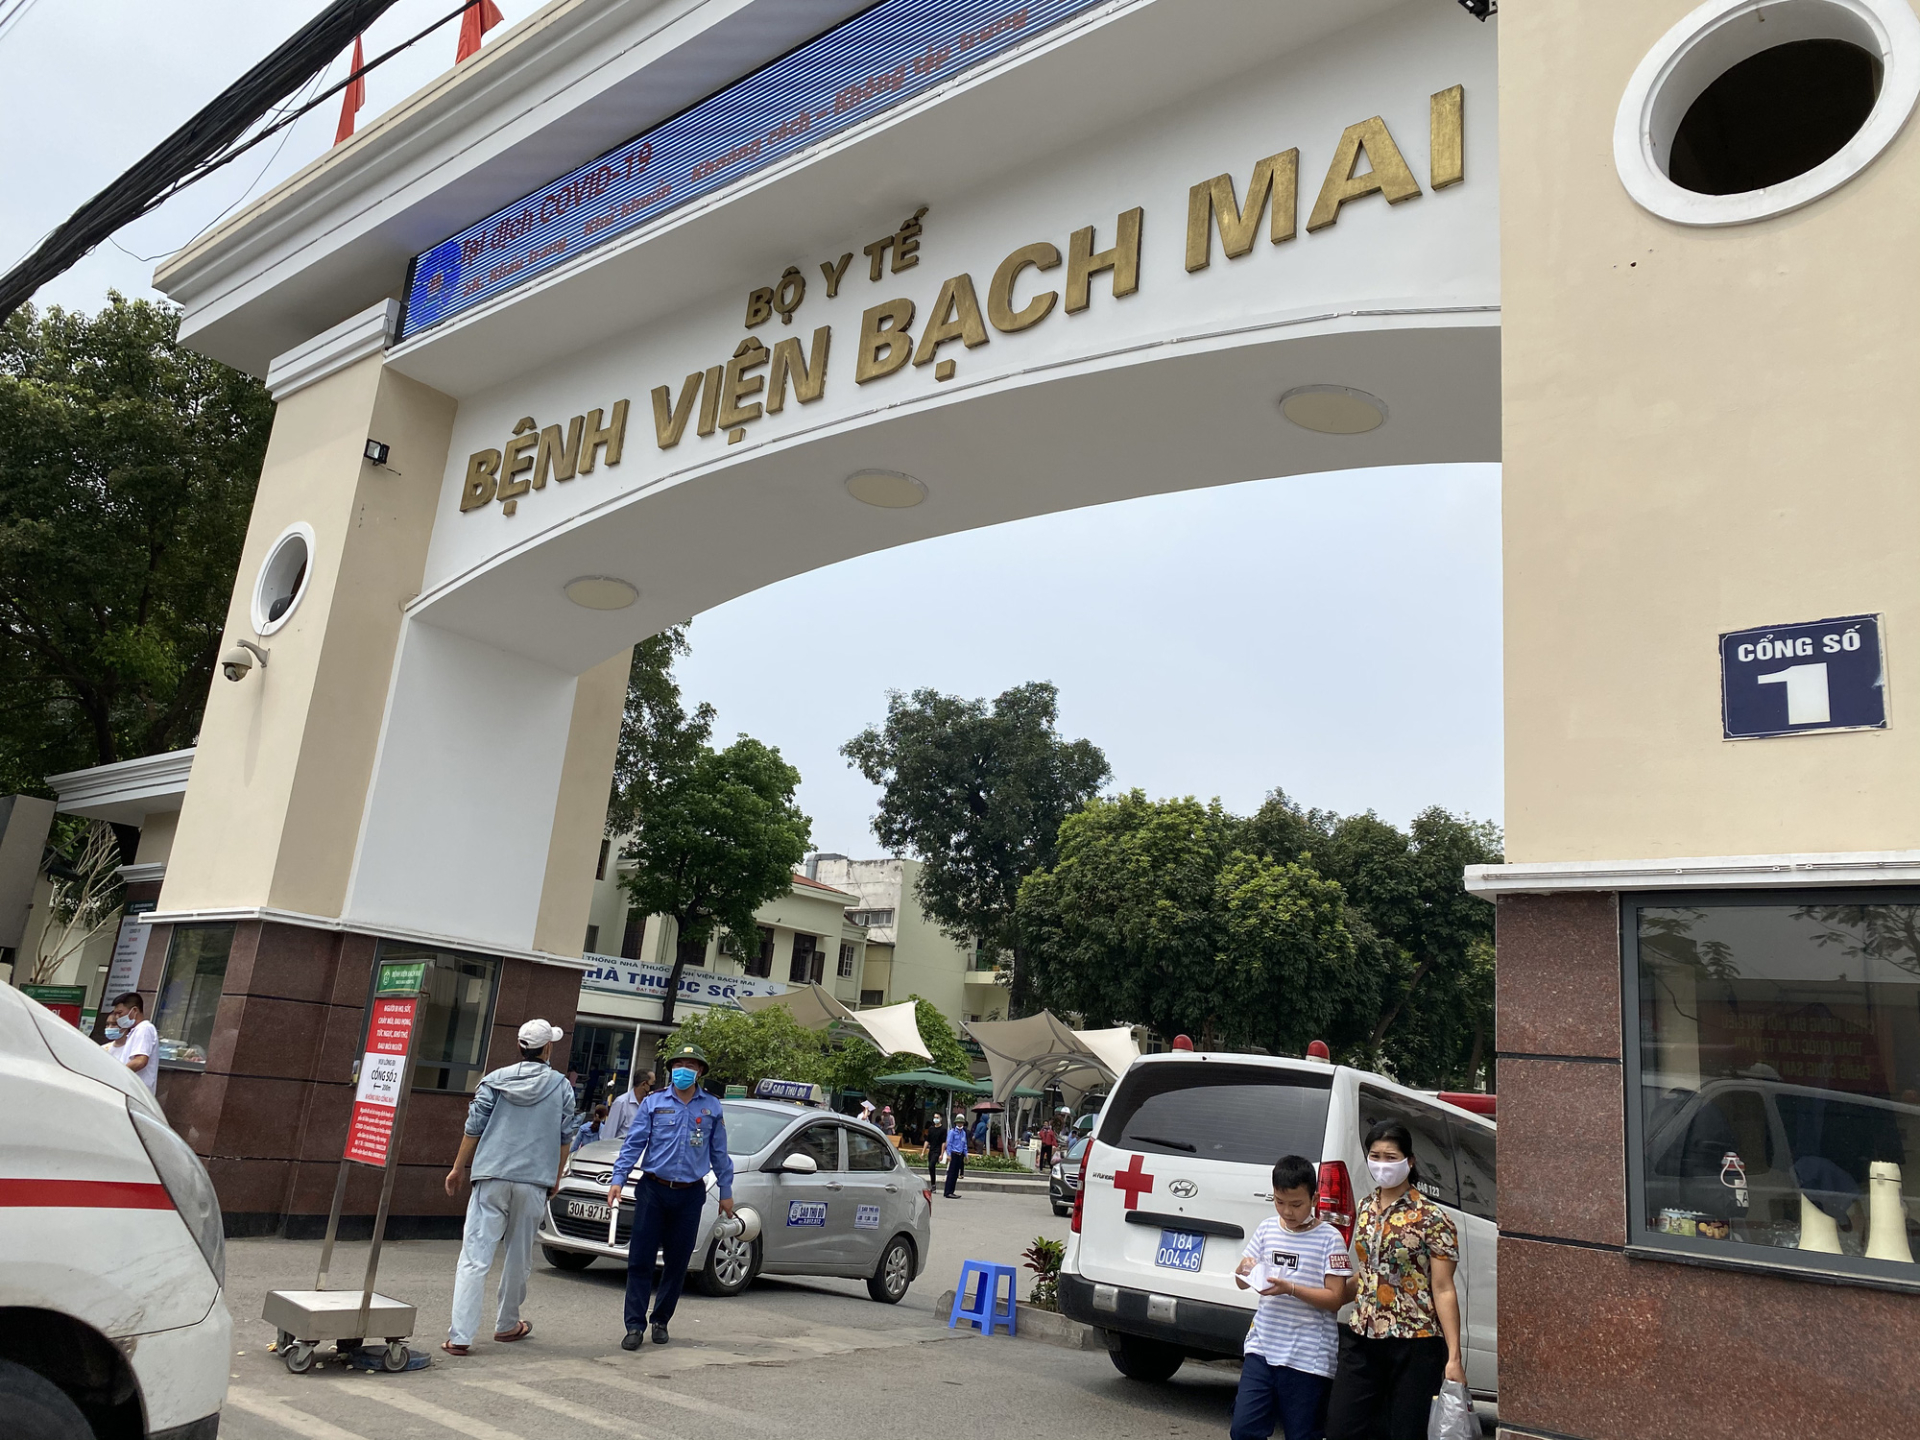 Hé lộ 5 bệnh viện hạng đặc biệt duy nhất ở Việt Nam được đề xuất nâng cấp, nguyên nhân vì sao? - ảnh 1